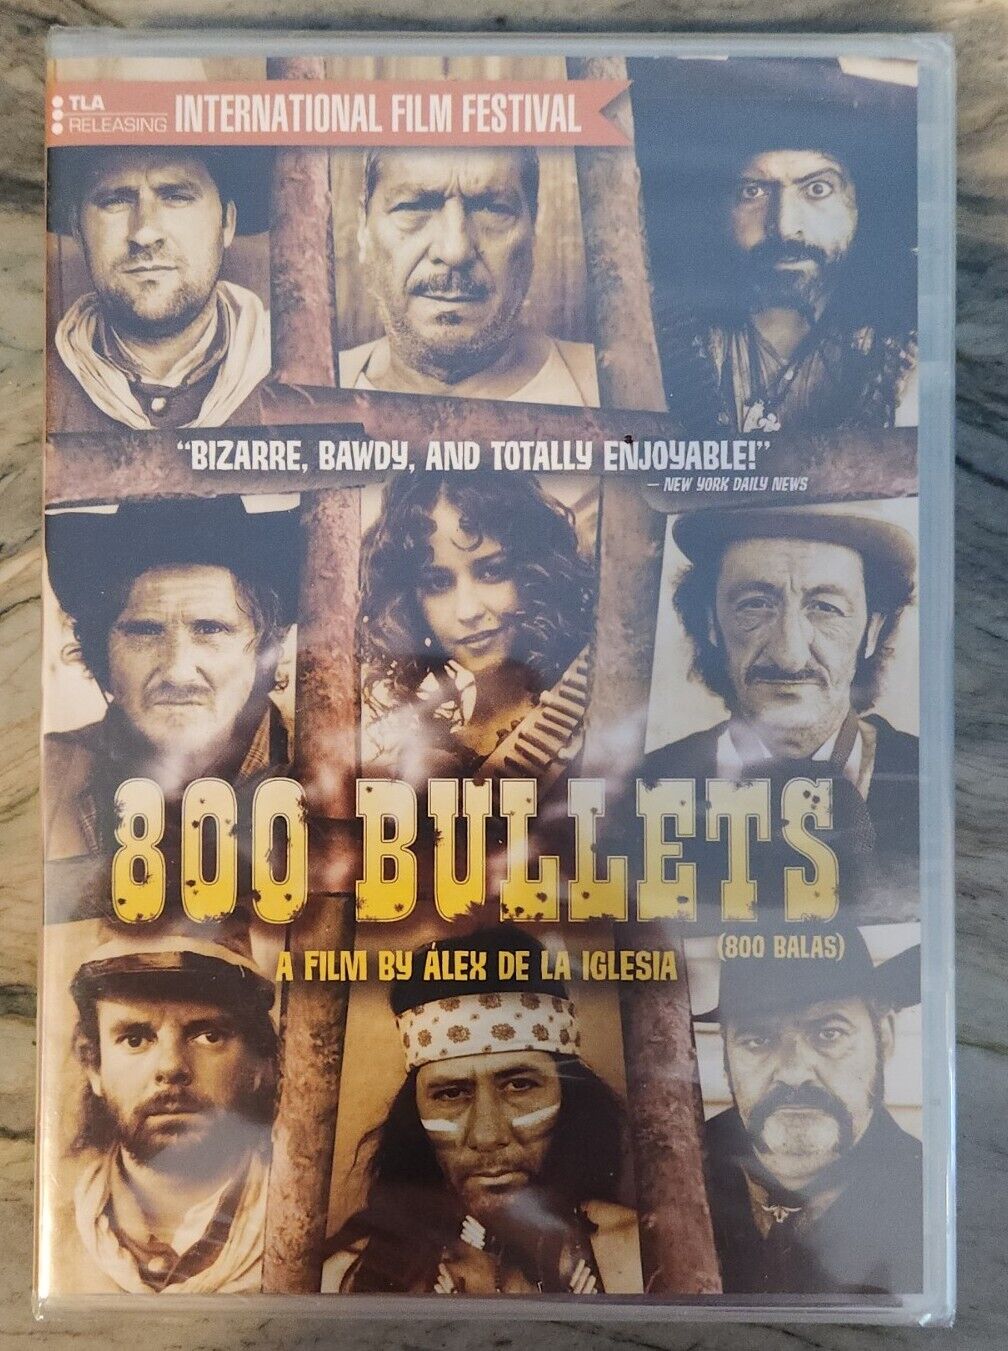 Best of 800 bullets 2002 full movie